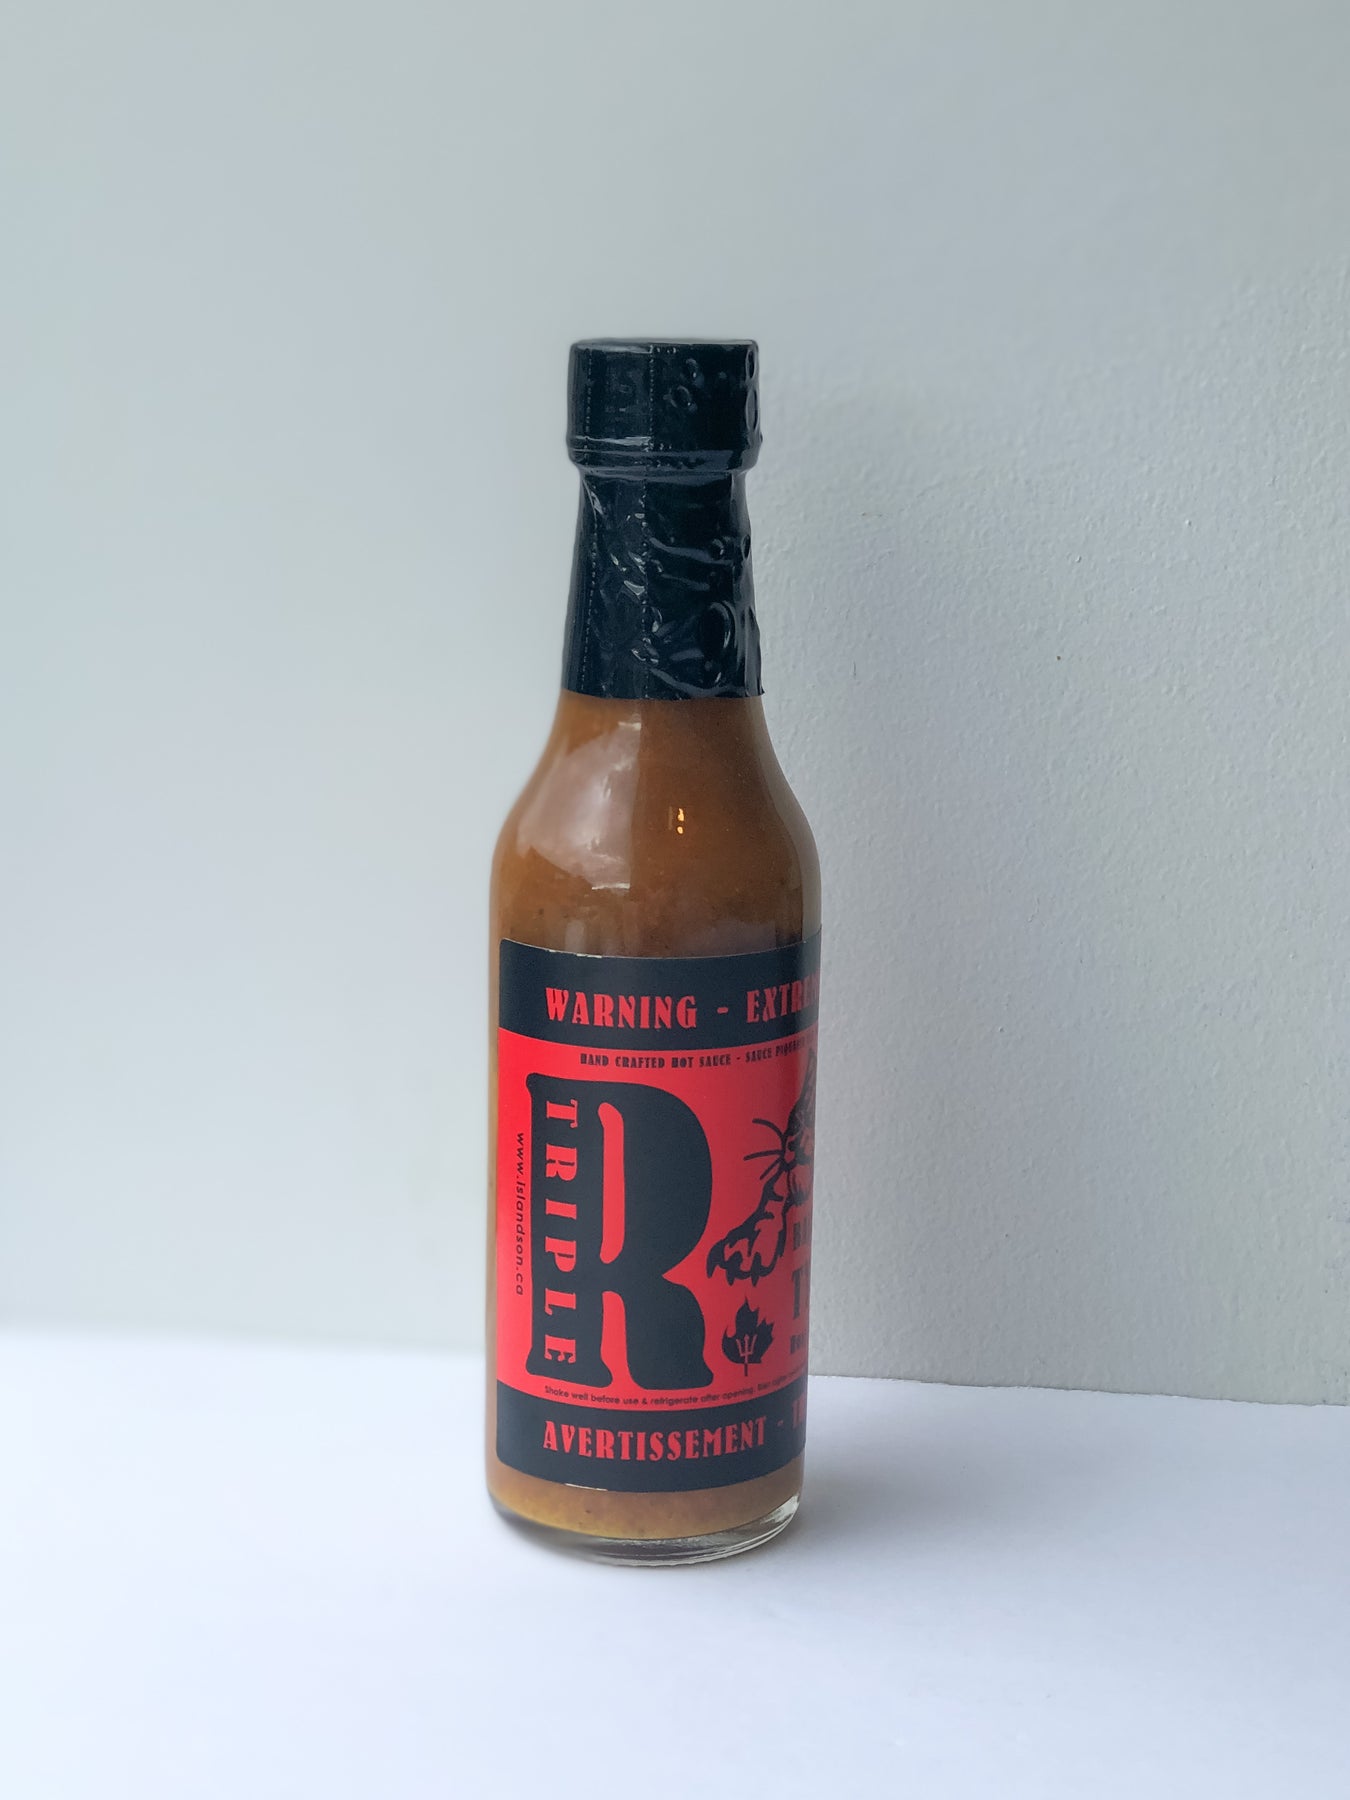 Red Rectum Hot Sauce